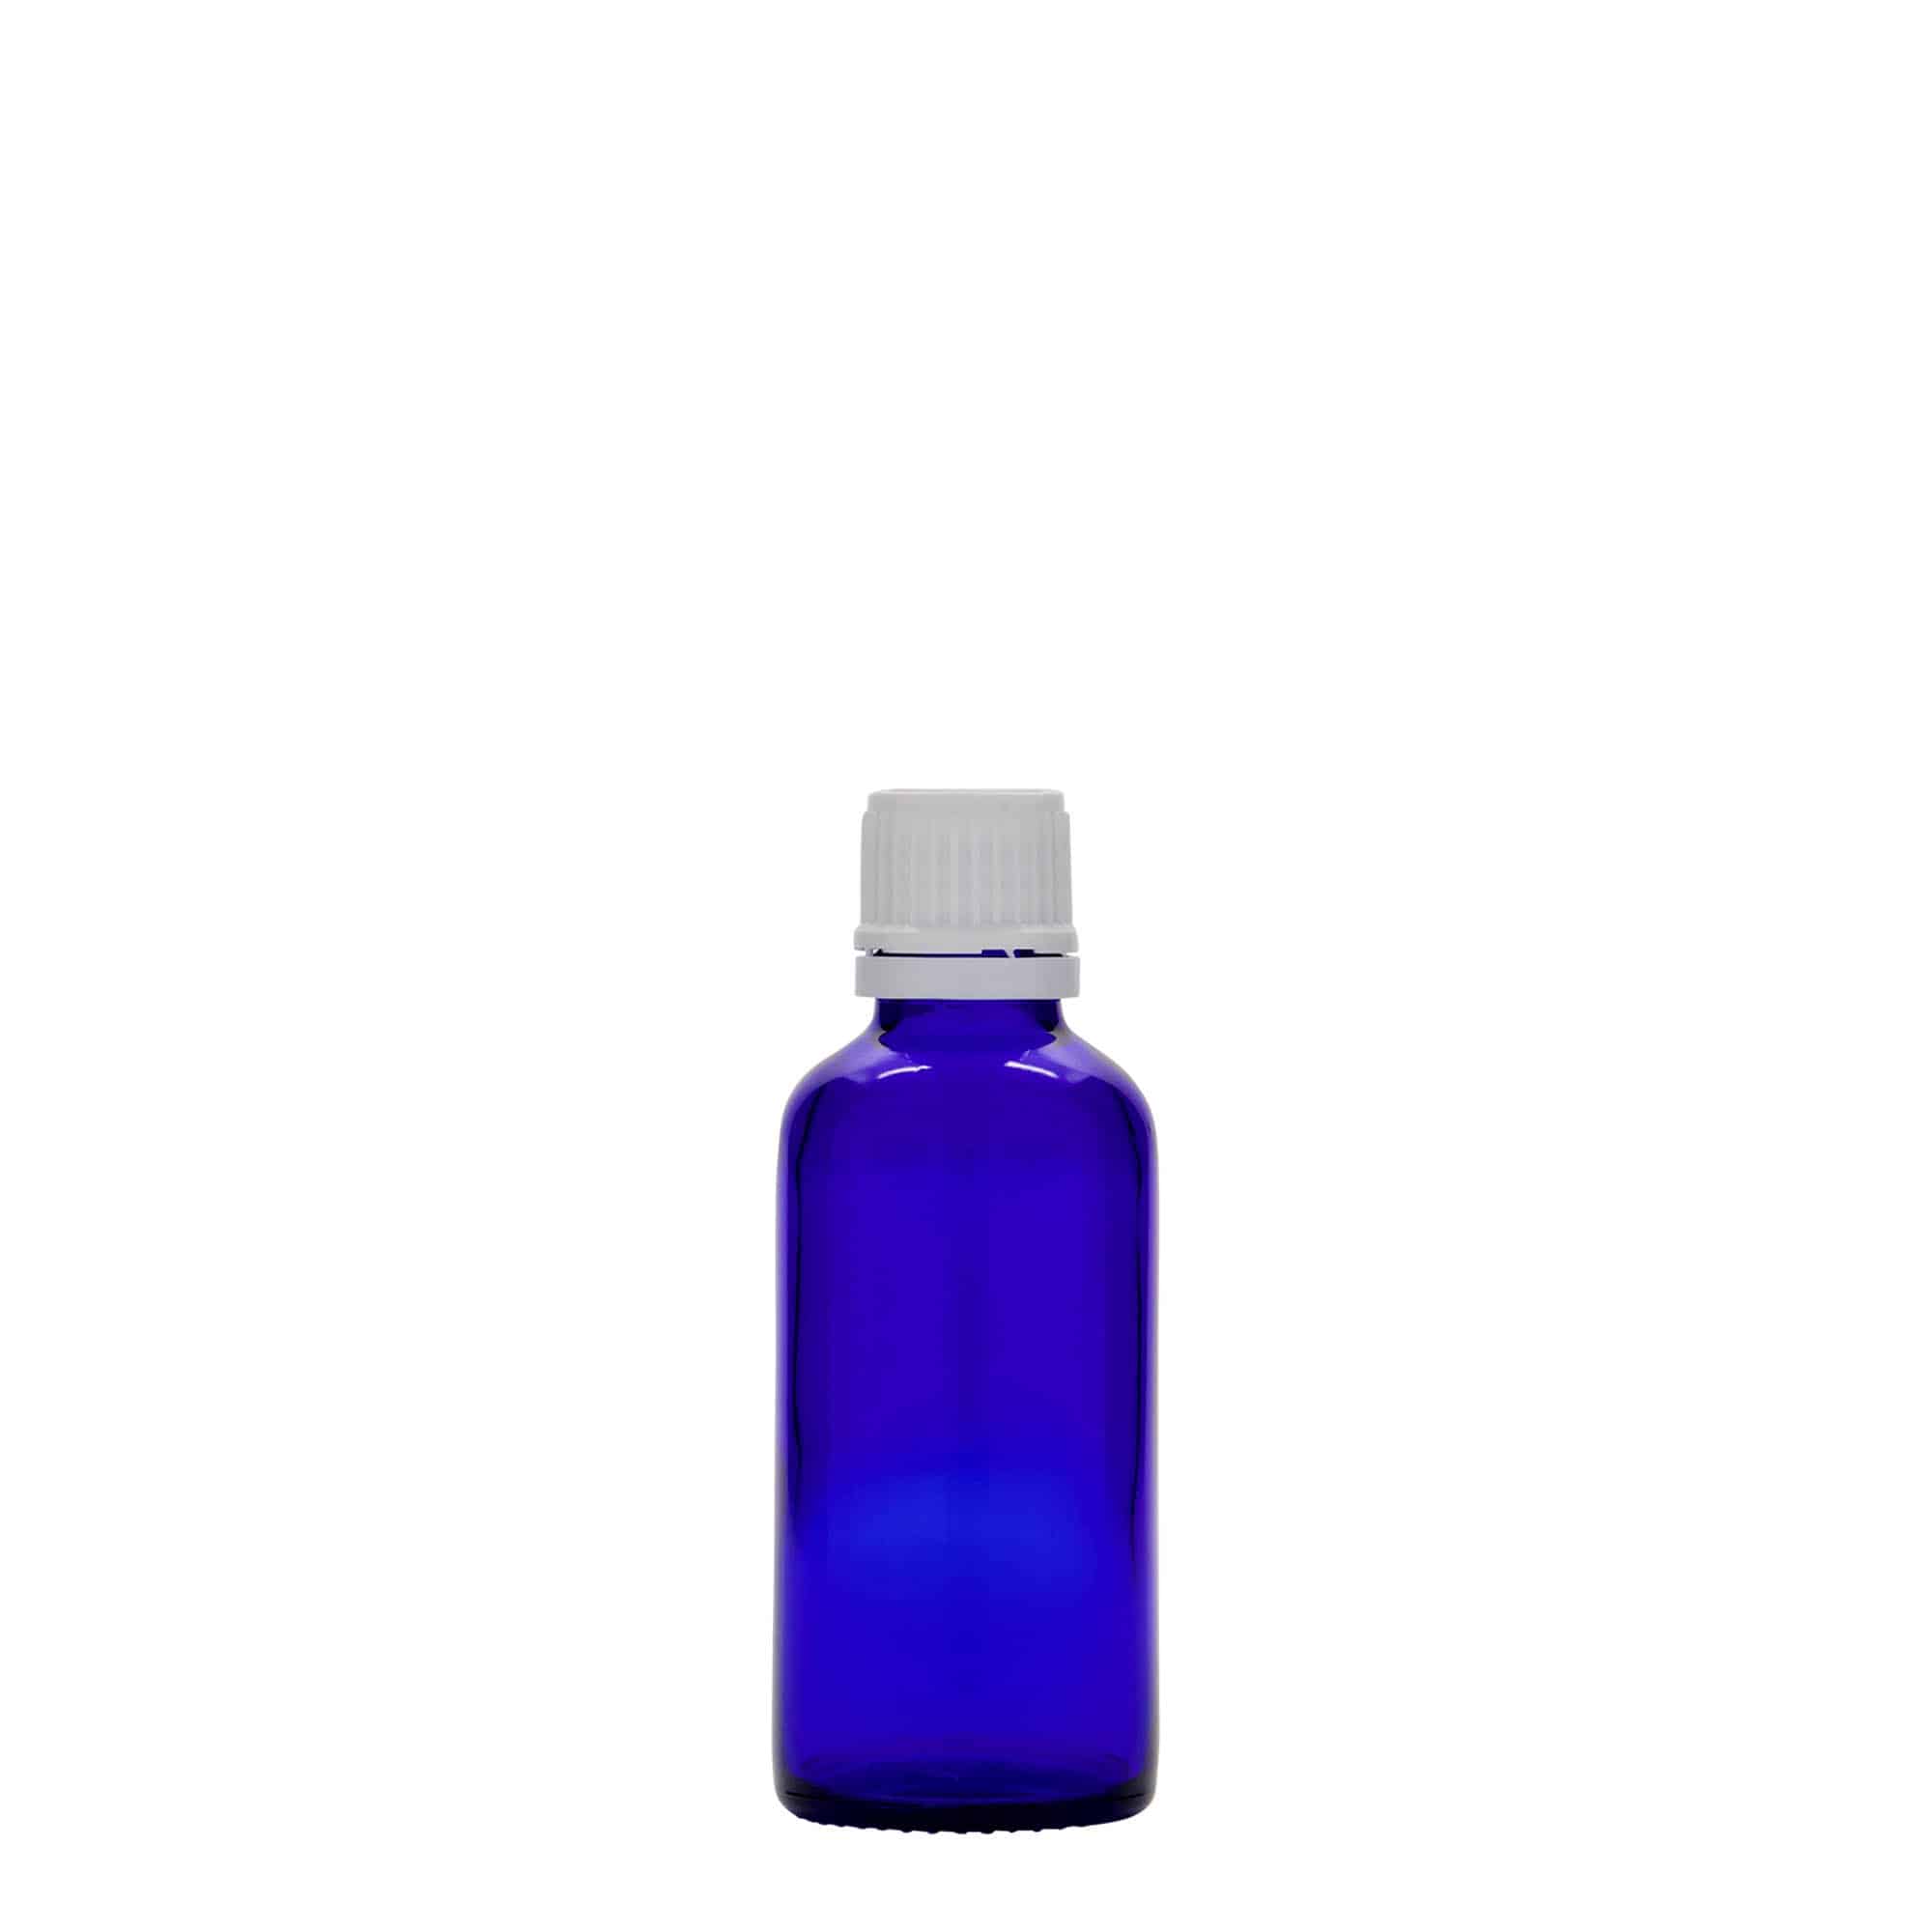 50 ml medicinflaske, glas, kongeblå, åbning: DIN 18